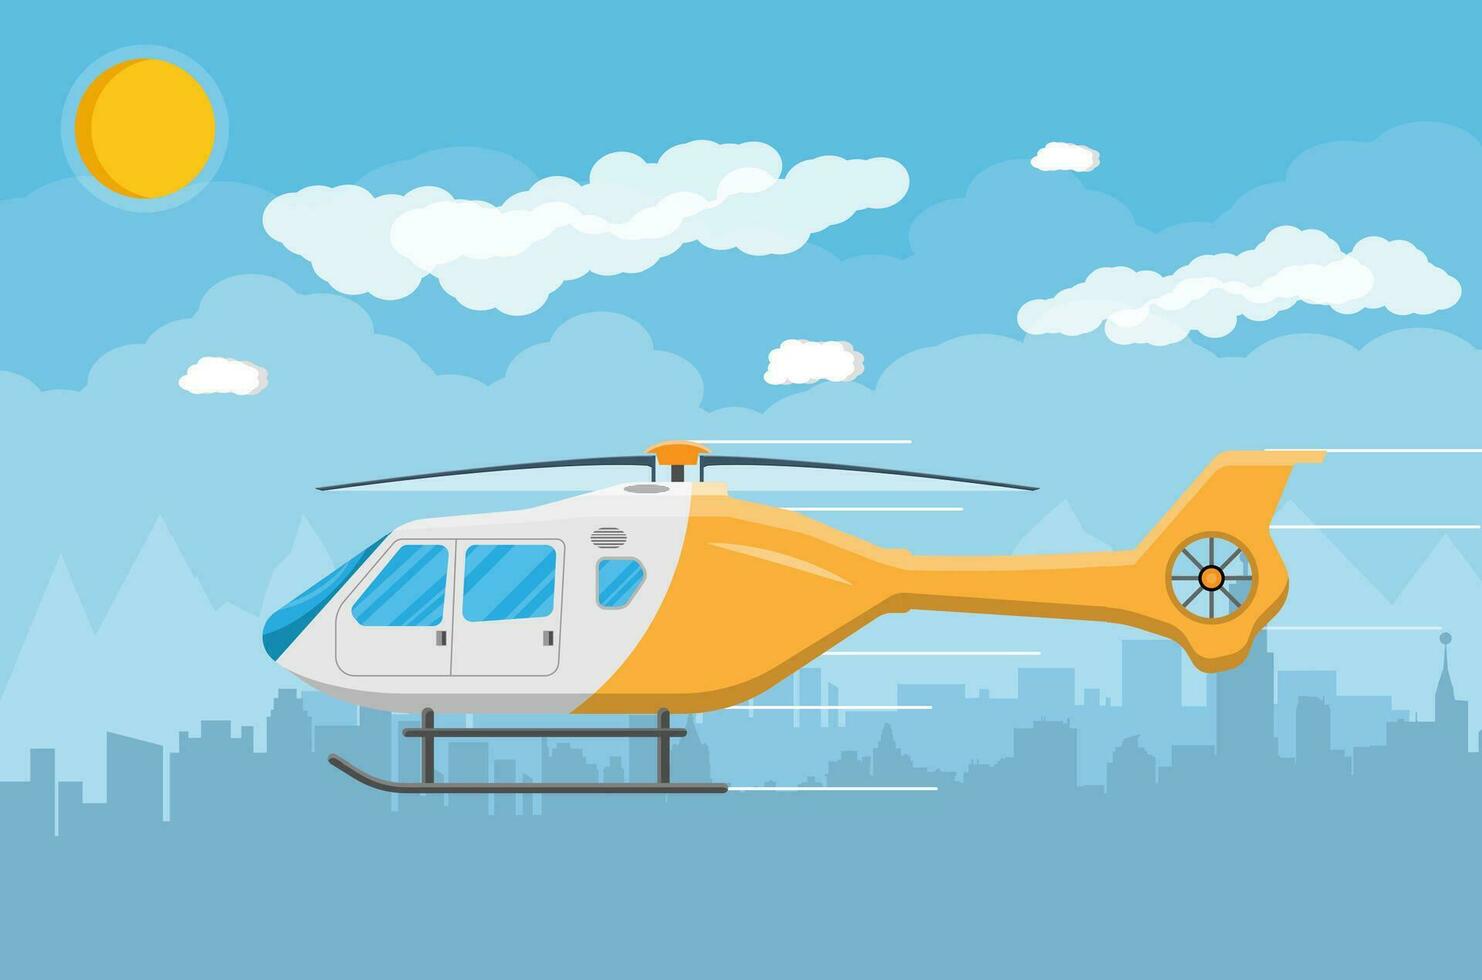 Hubschrauber Transport, Antenne Fahrzeug mit Propeller, bürgerlich Luftfahrt. Stadtbild, Himmel, Wolken und Sonne. Vektor Illustration im eben Stil